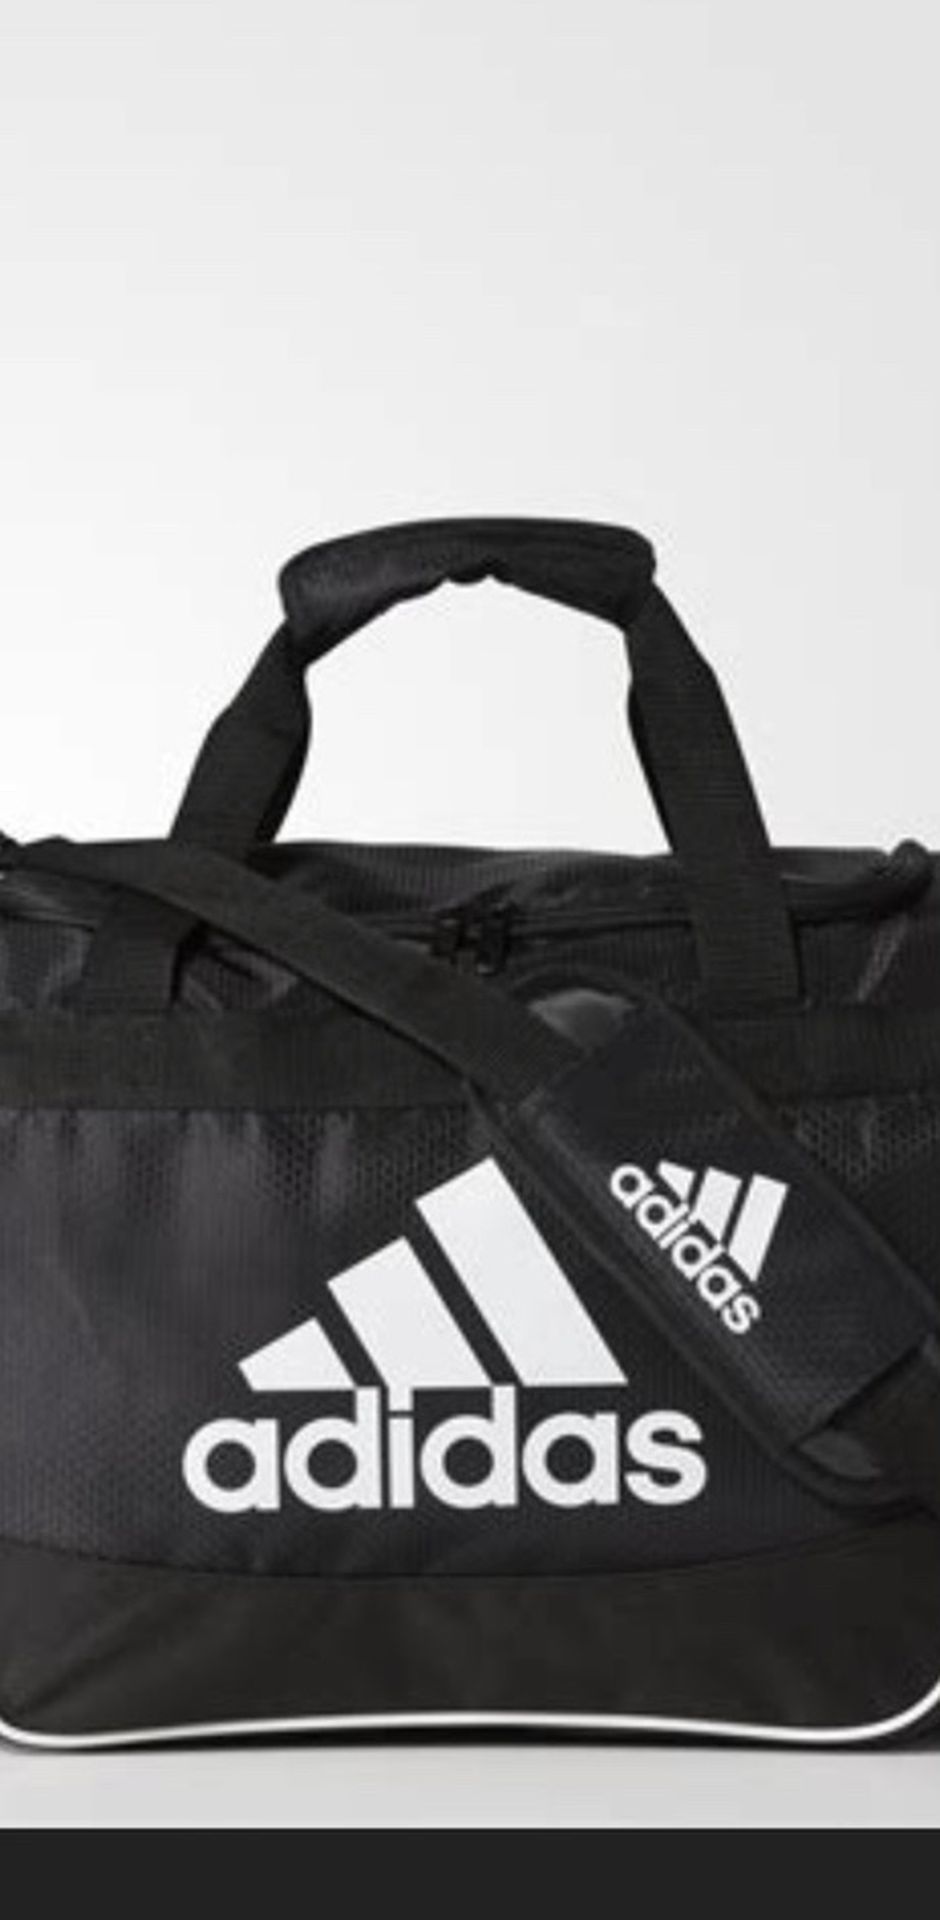 Adidas Defender 2 Duffle Bag